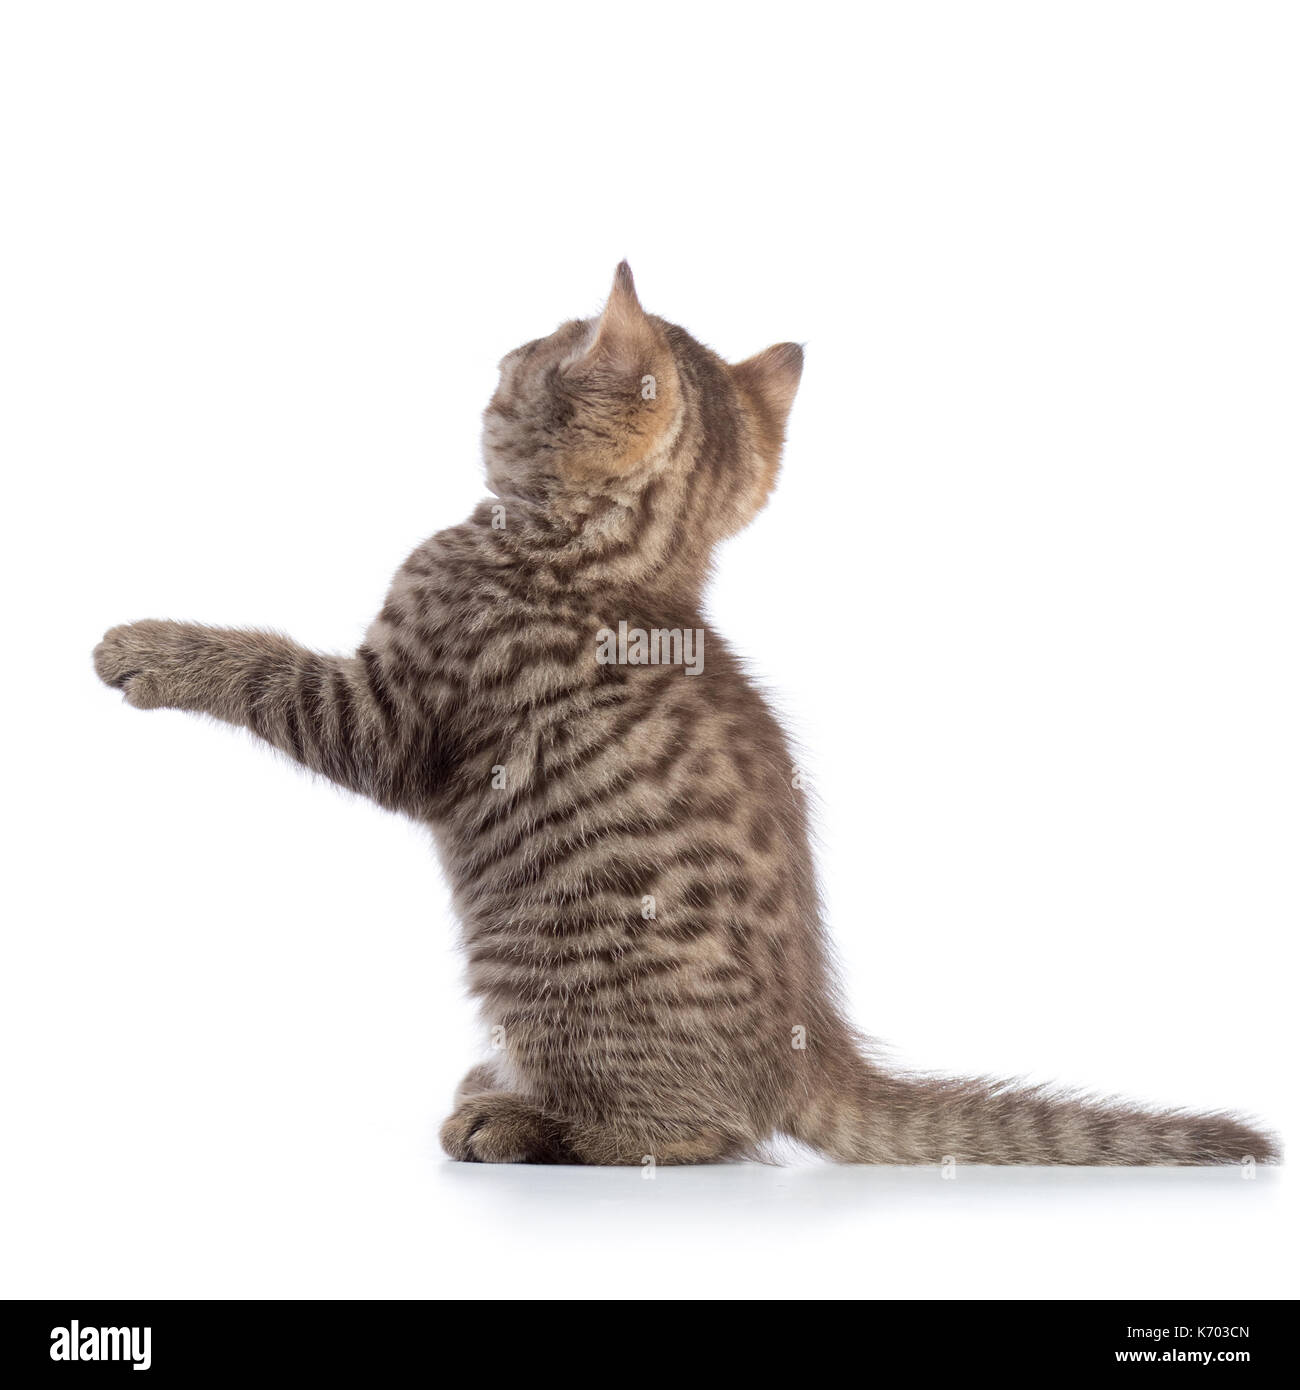 Ansicht der Rückseite des tabby-cat Kitten auf weißem Hintergrund Stockfoto